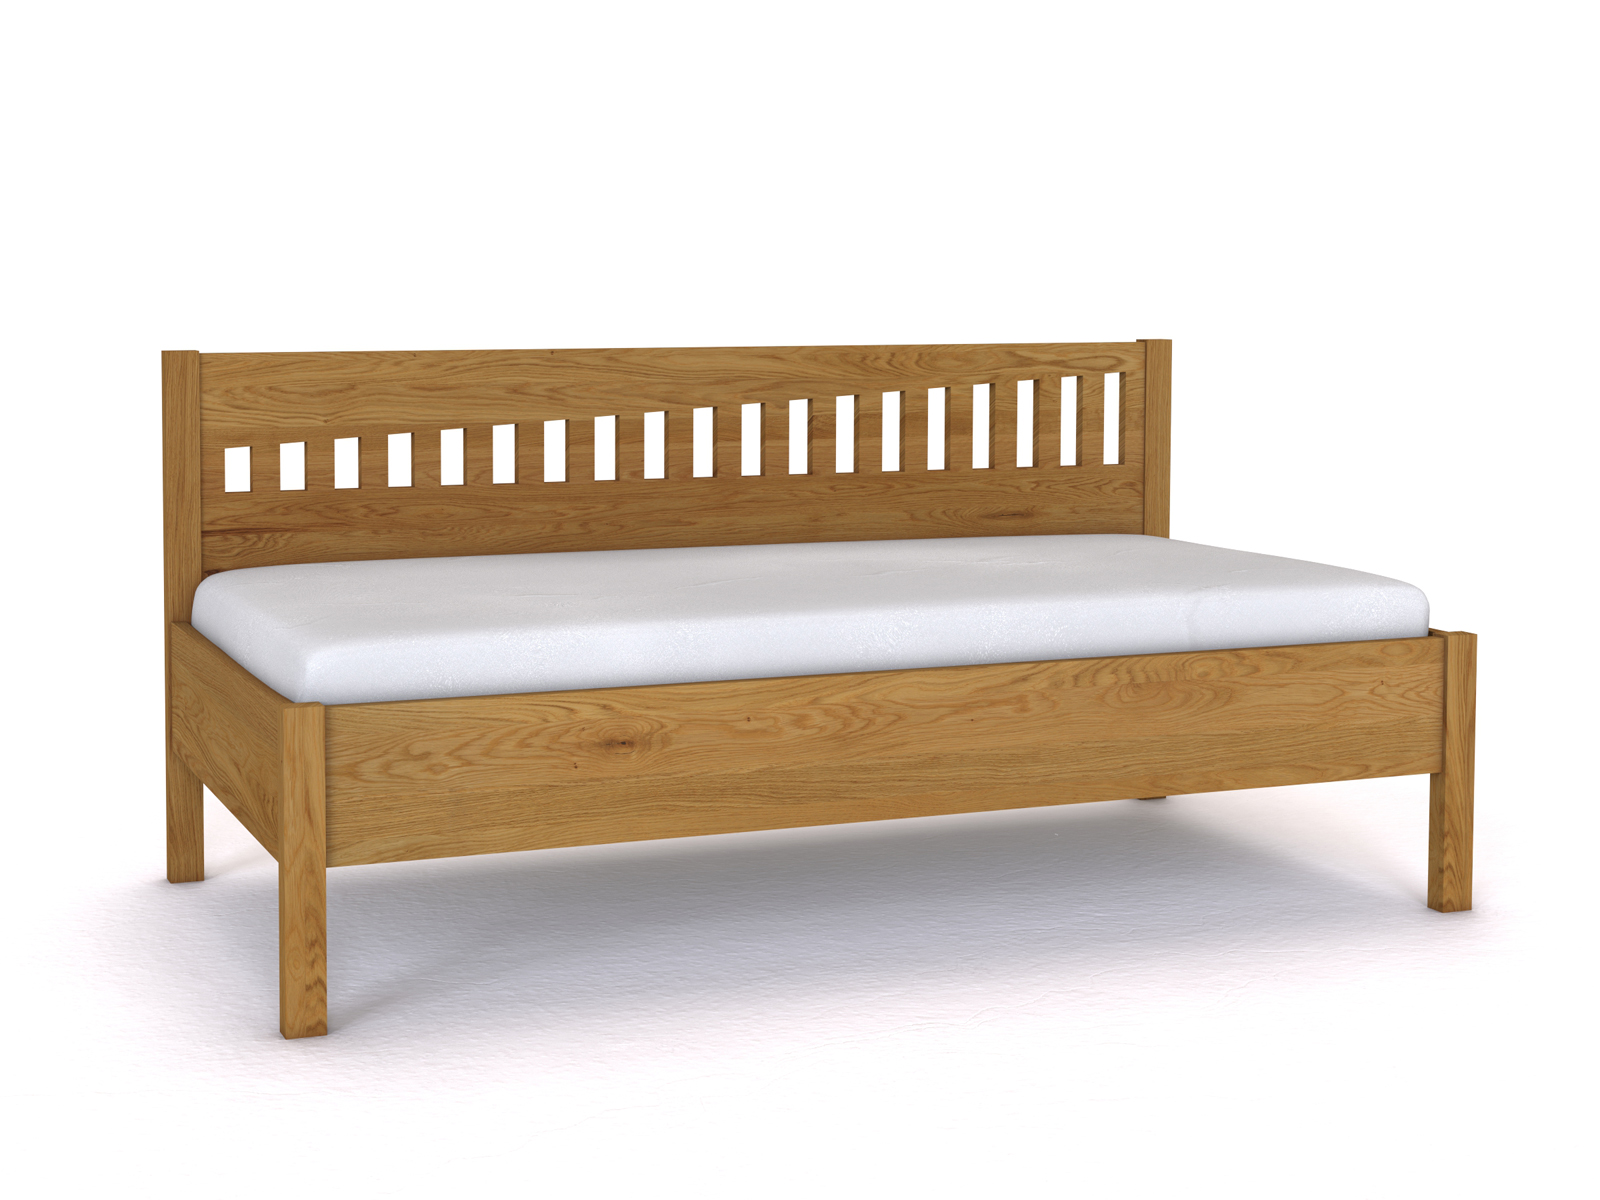 Sofabett „Stefanie“ aus Eiche in den Maßen 90 x 200 cm - ohne Armlehne